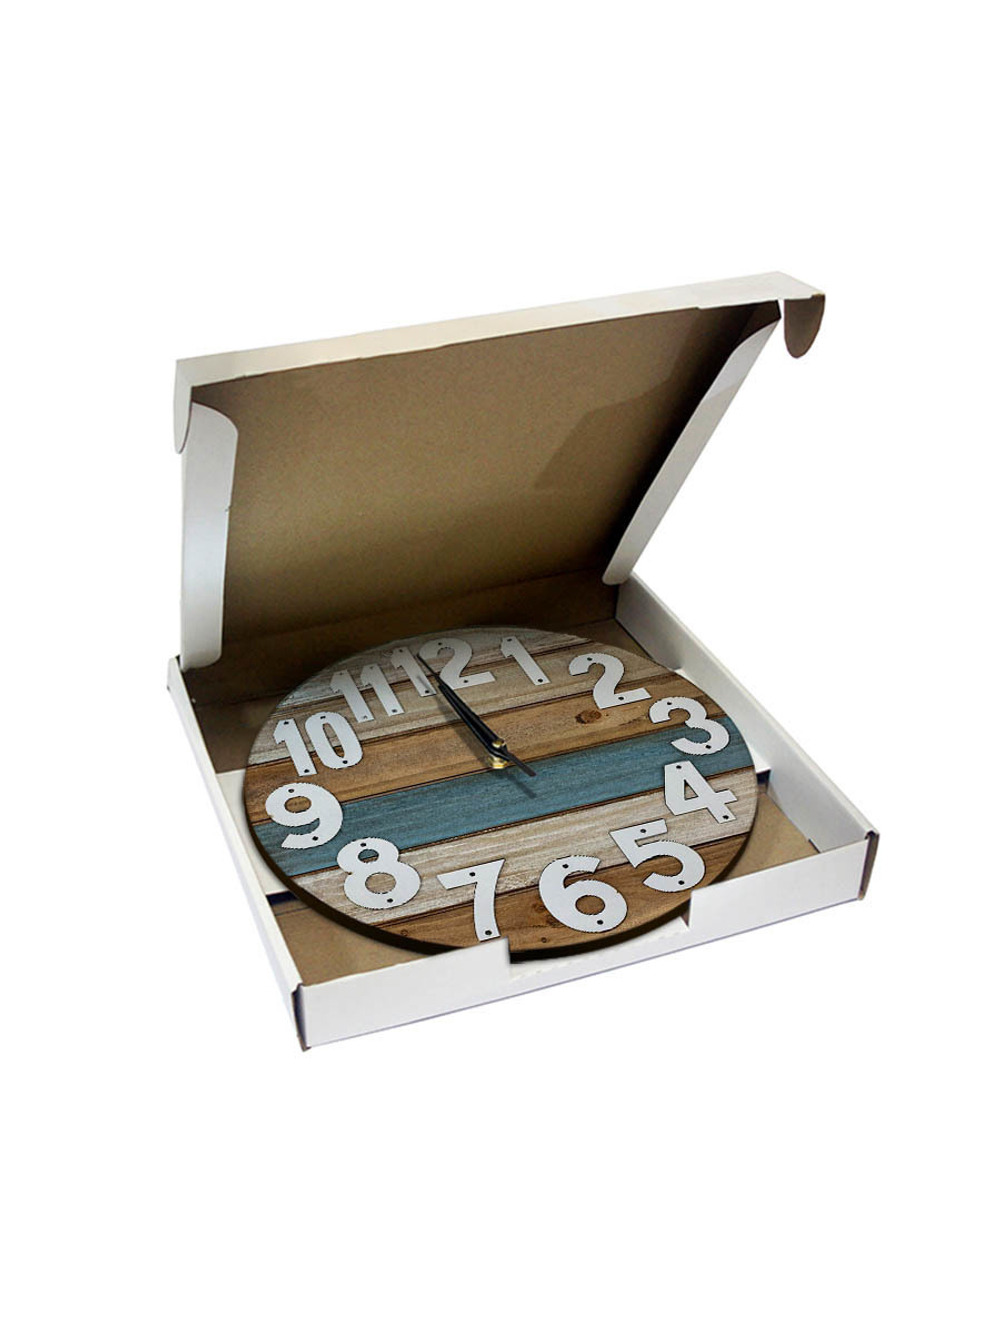 Часы настенные деревянные IDEAL "Прибитые цифры", 30 см, бесшумные (черный с коричневым) (-)